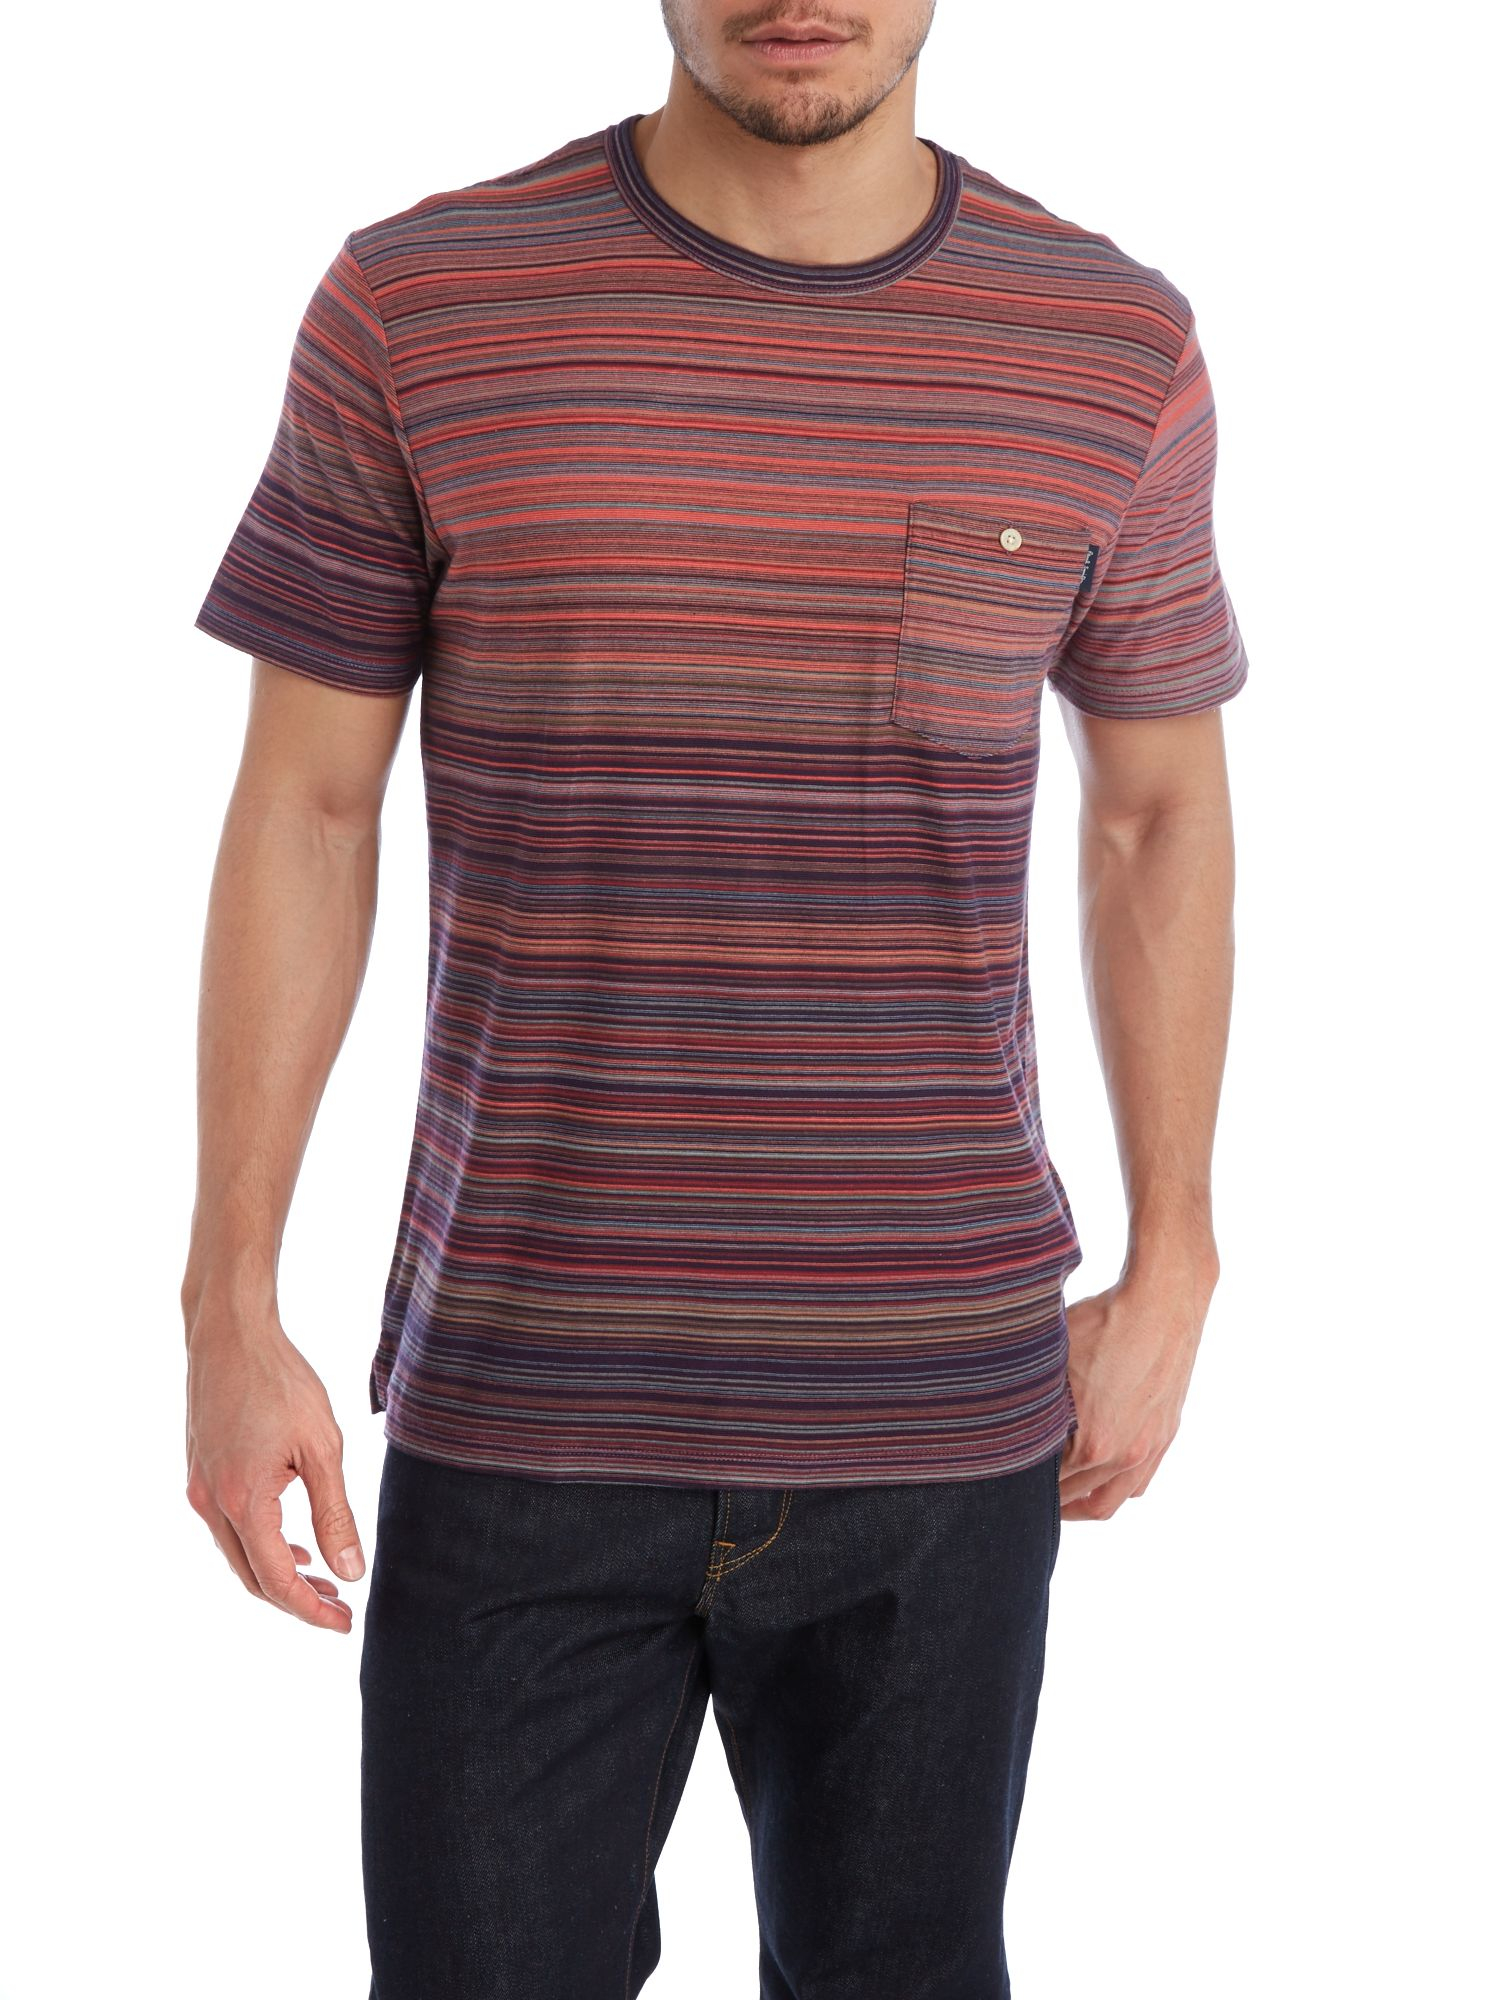 Paul Smith Denim Multi Stripe T Shirt for Men - Lyst